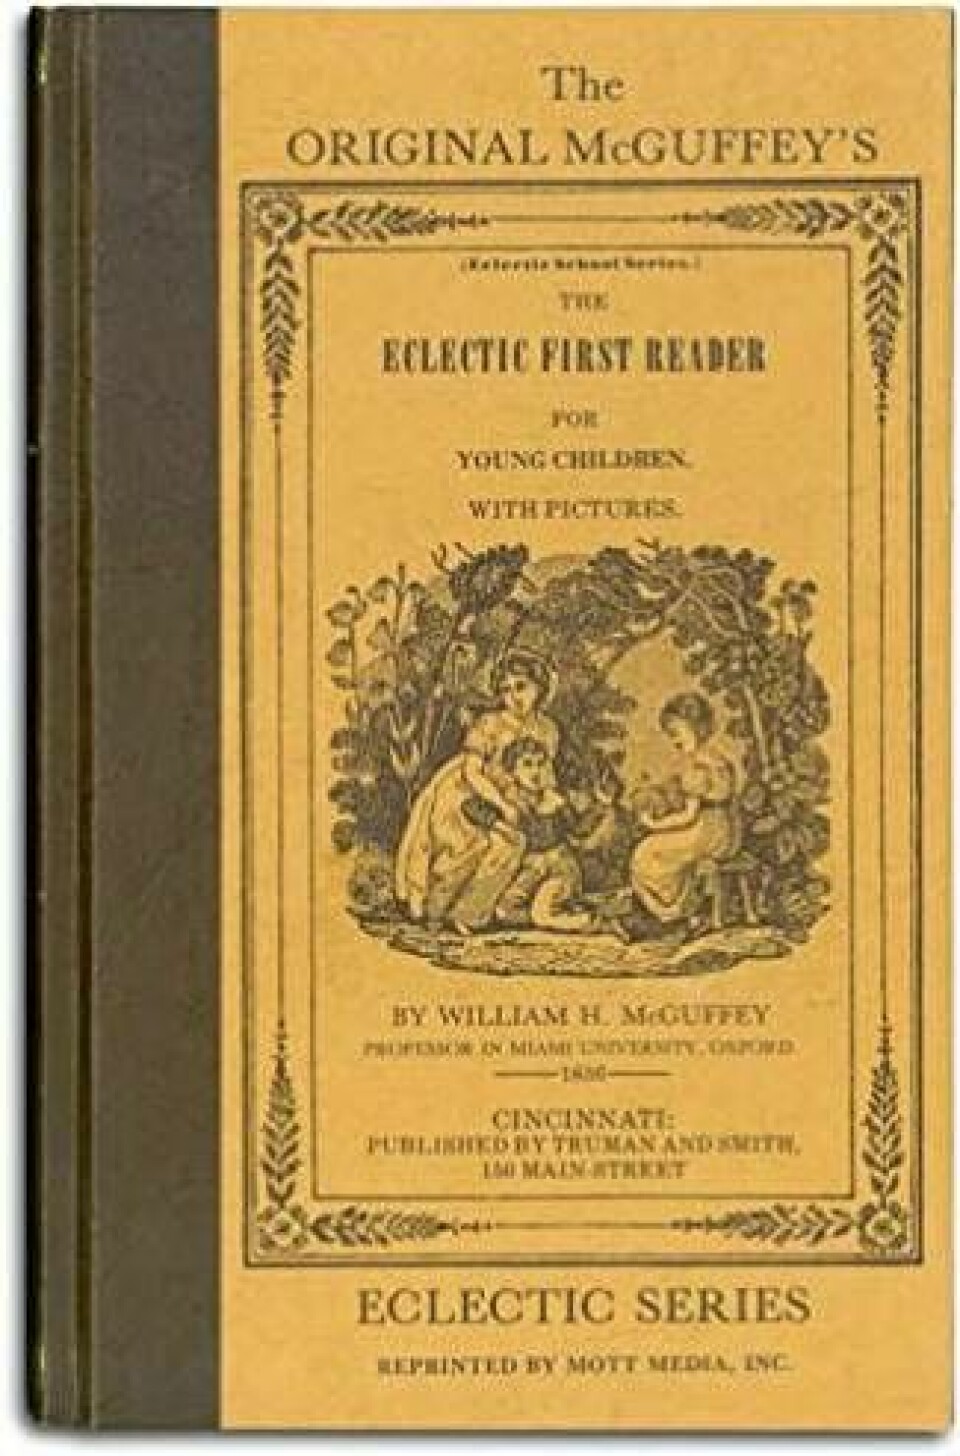 William H Mcguffeys bok Eclectic First Reader.